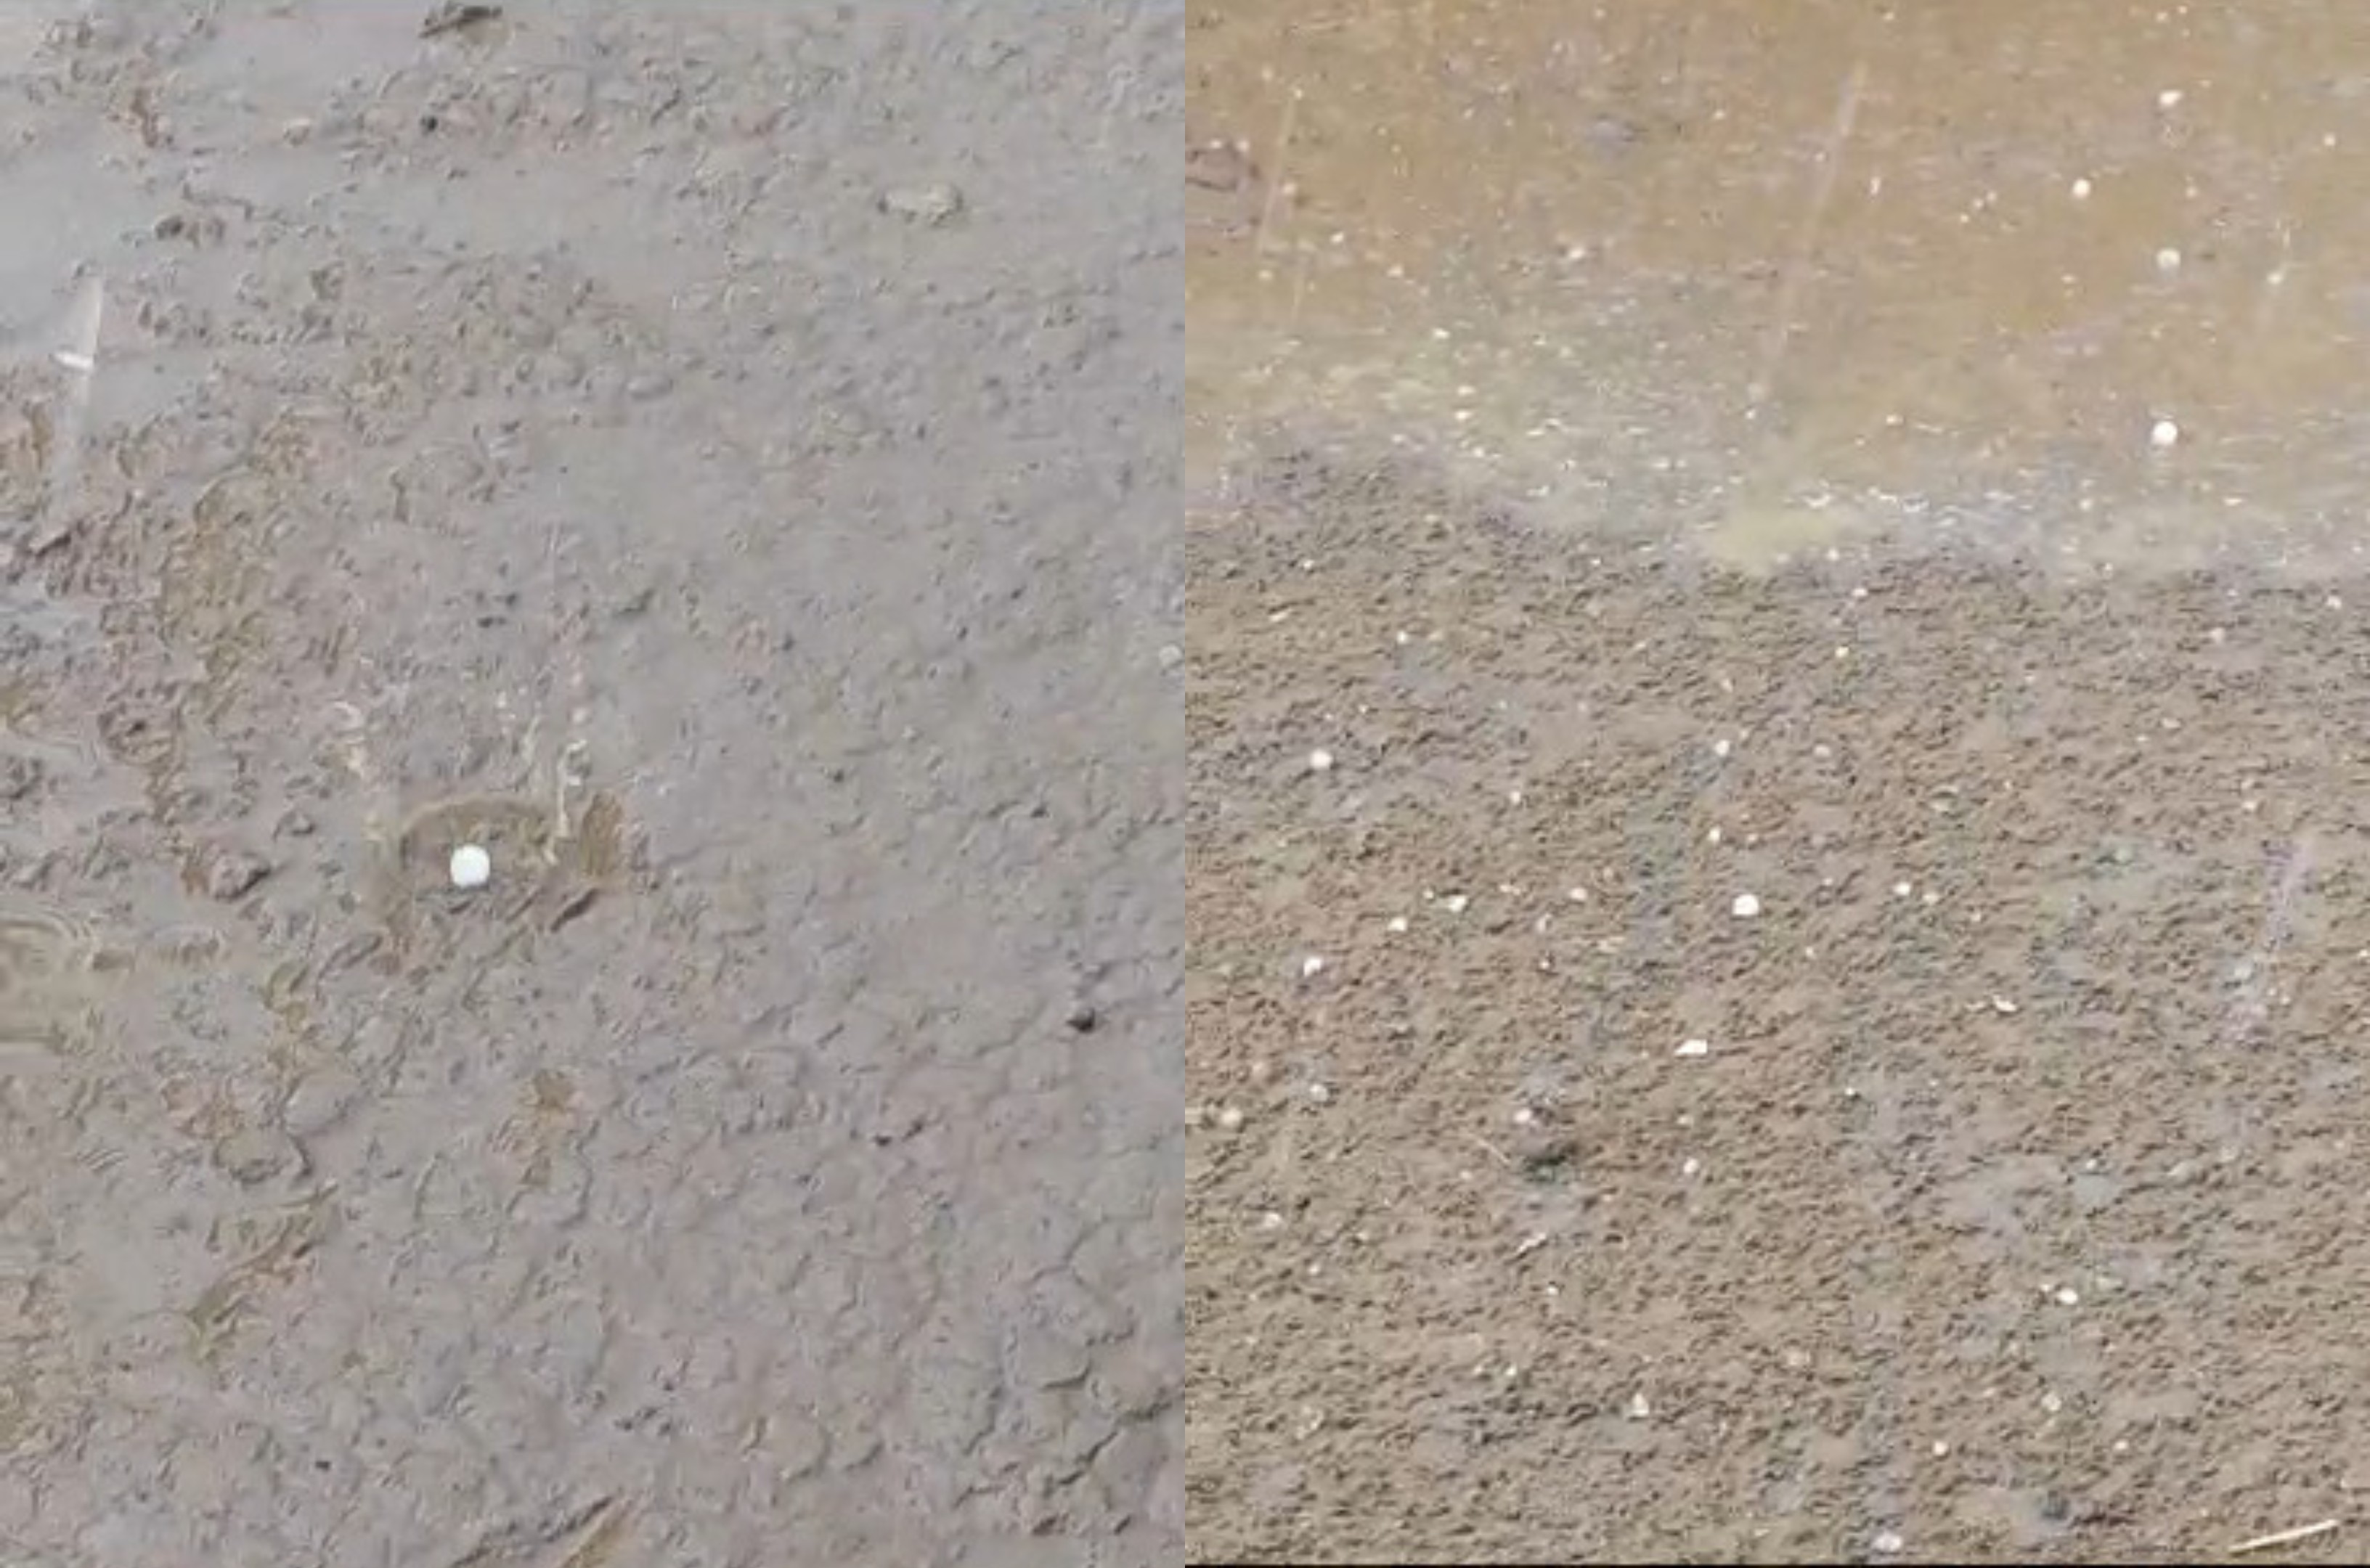 Chuva de granizo atinge comunidade indígena em Roraima; VÍDEO